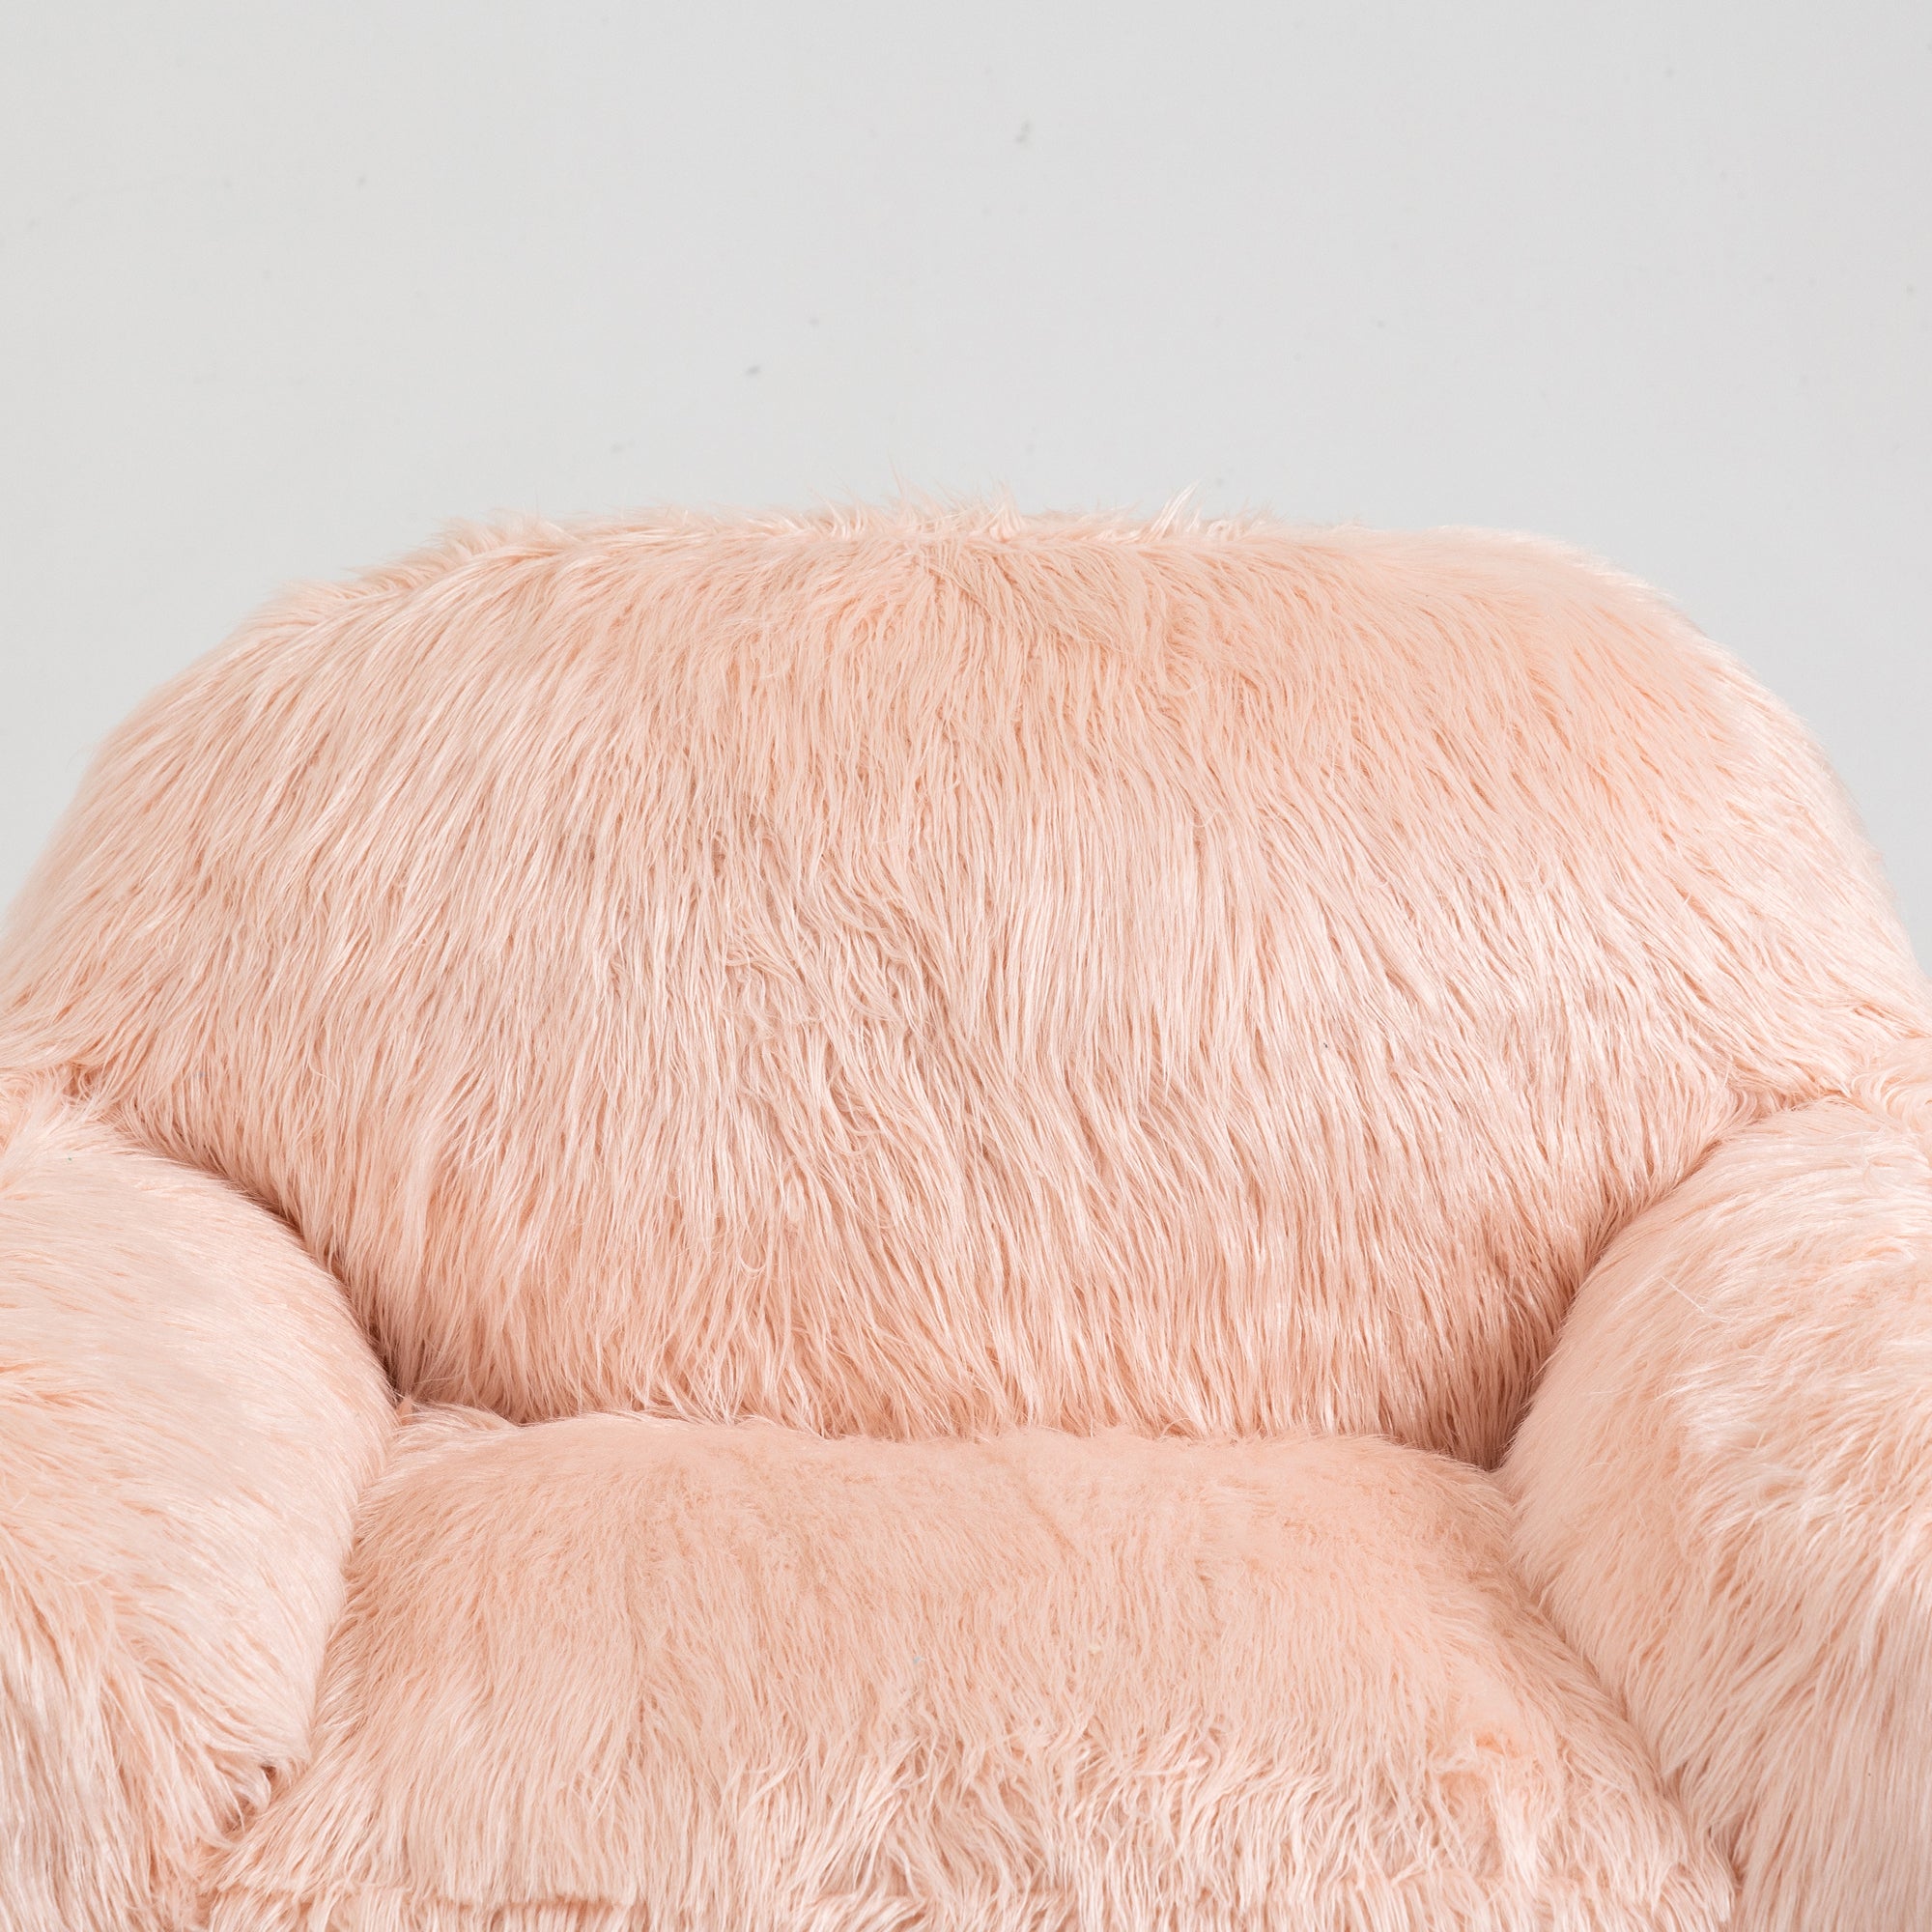 Bean bag chair lazy long hair sofa bean bag chair pink-faux fur